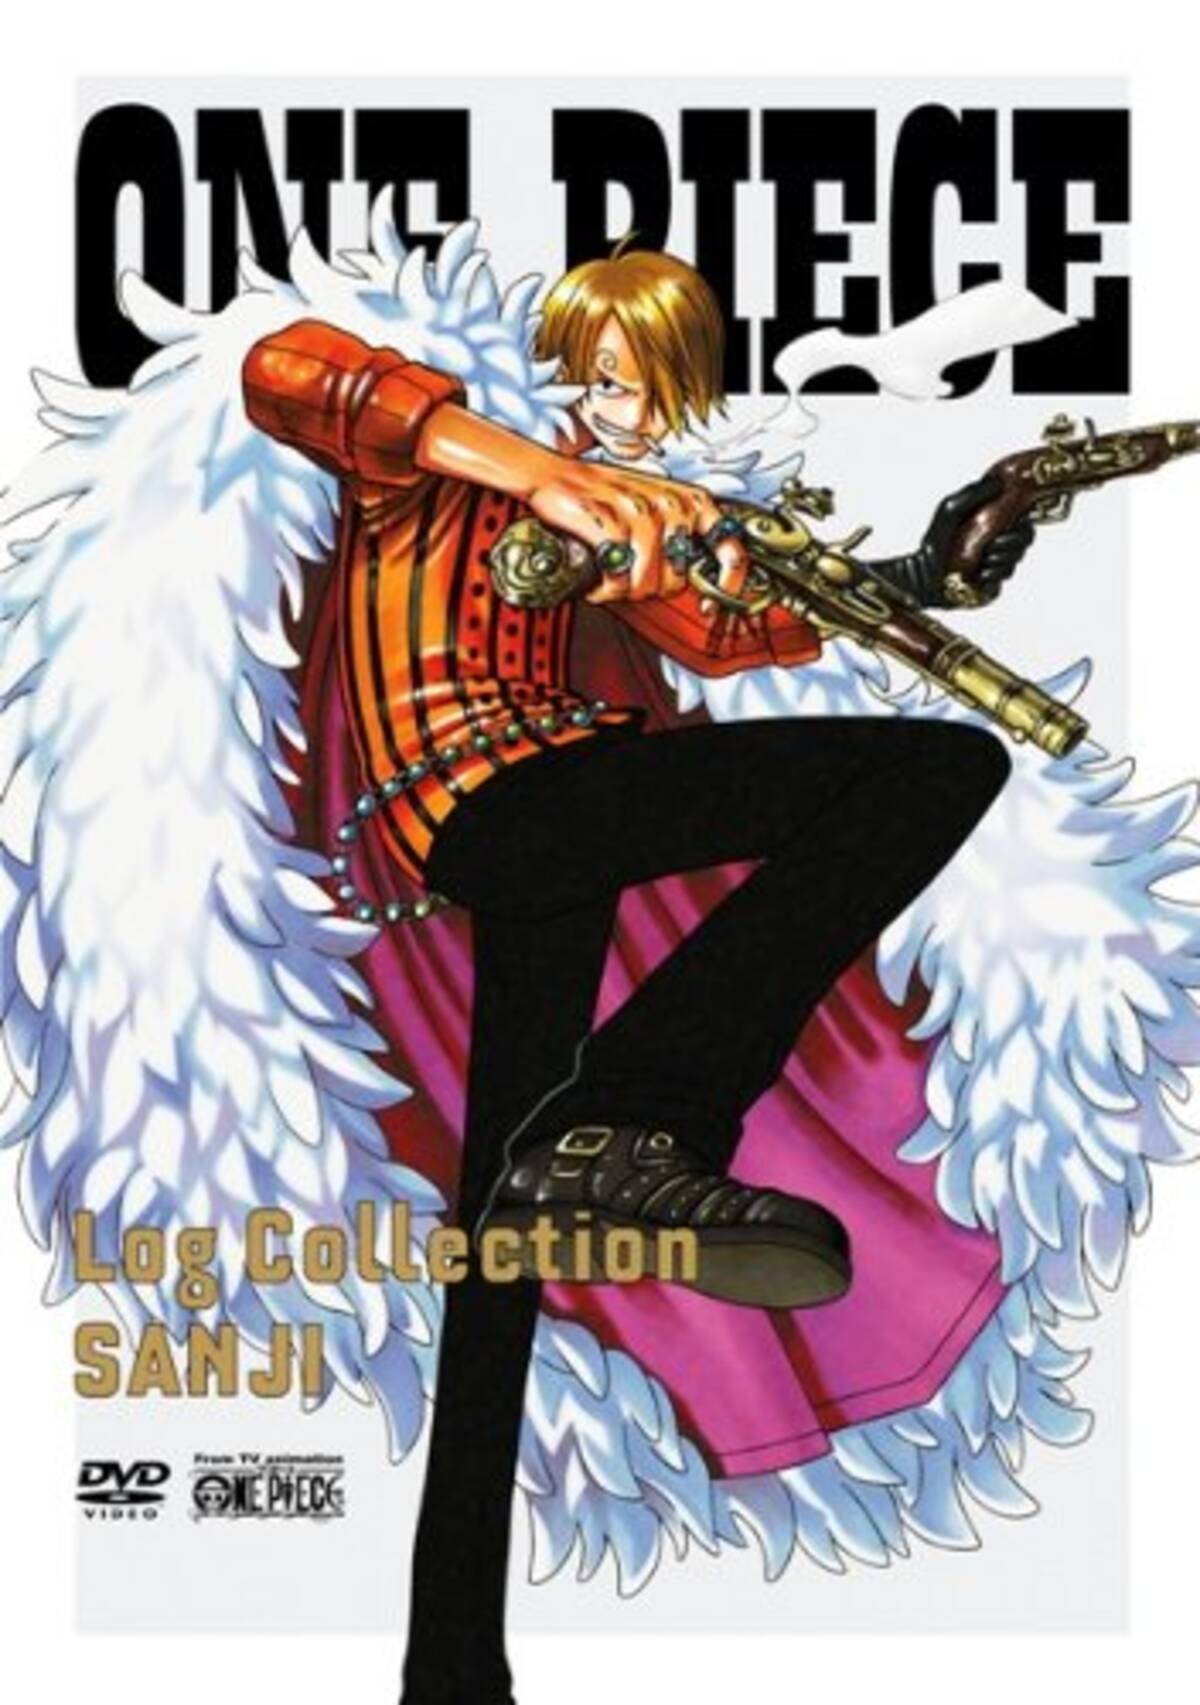 アニメキャラの魅力 スーツスタイルのイケメン不良コック サンジ の魅力に迫る One Piece 14年12月8日 エキサイトニュース